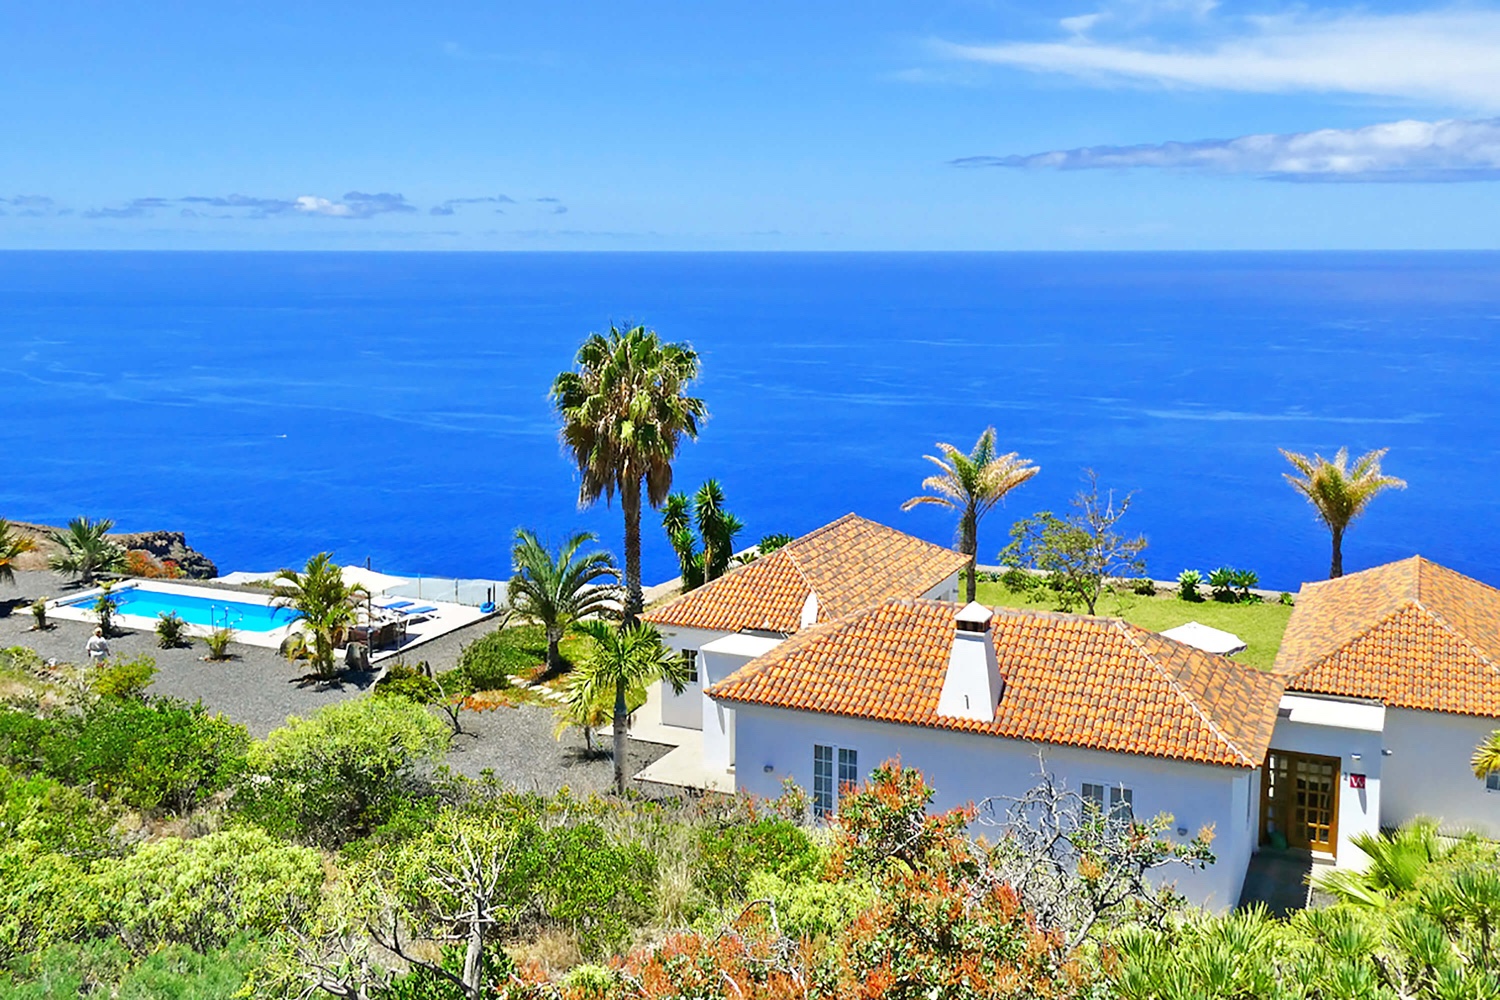 Zeer mooi modern huis met privé zwembad en prachtig panoramisch uitzicht op de Atlantische Oceaan. Het zeer goed uitgeruste vakantiehuis is ideaal voor een vakantie op La Palma die van alle gemakken is voorzien.